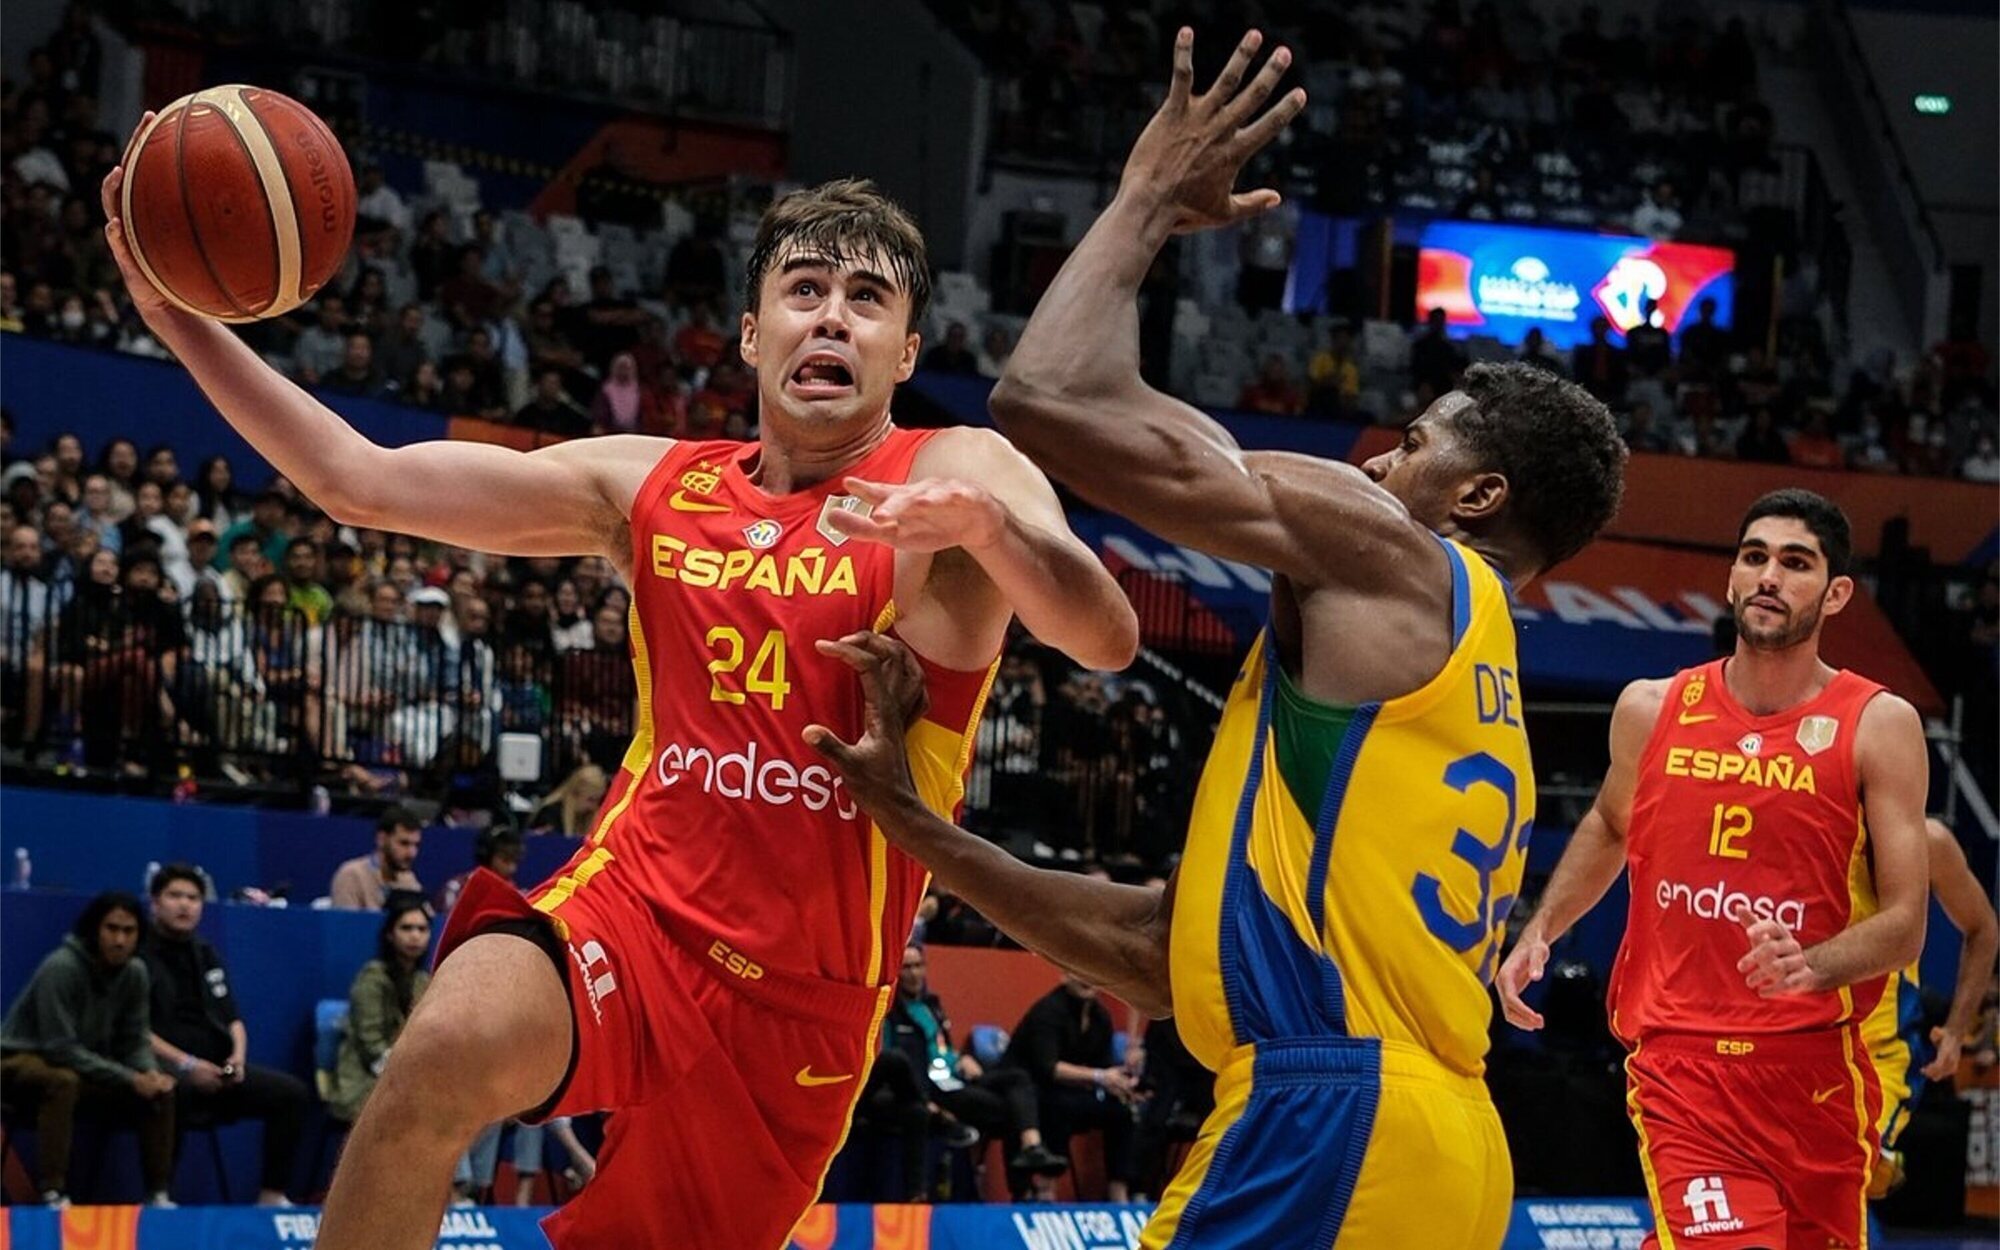 El Brasil - España de Baloncesto gana la jornada con un 7,3% y la franquicia 'FBI' completa el podio